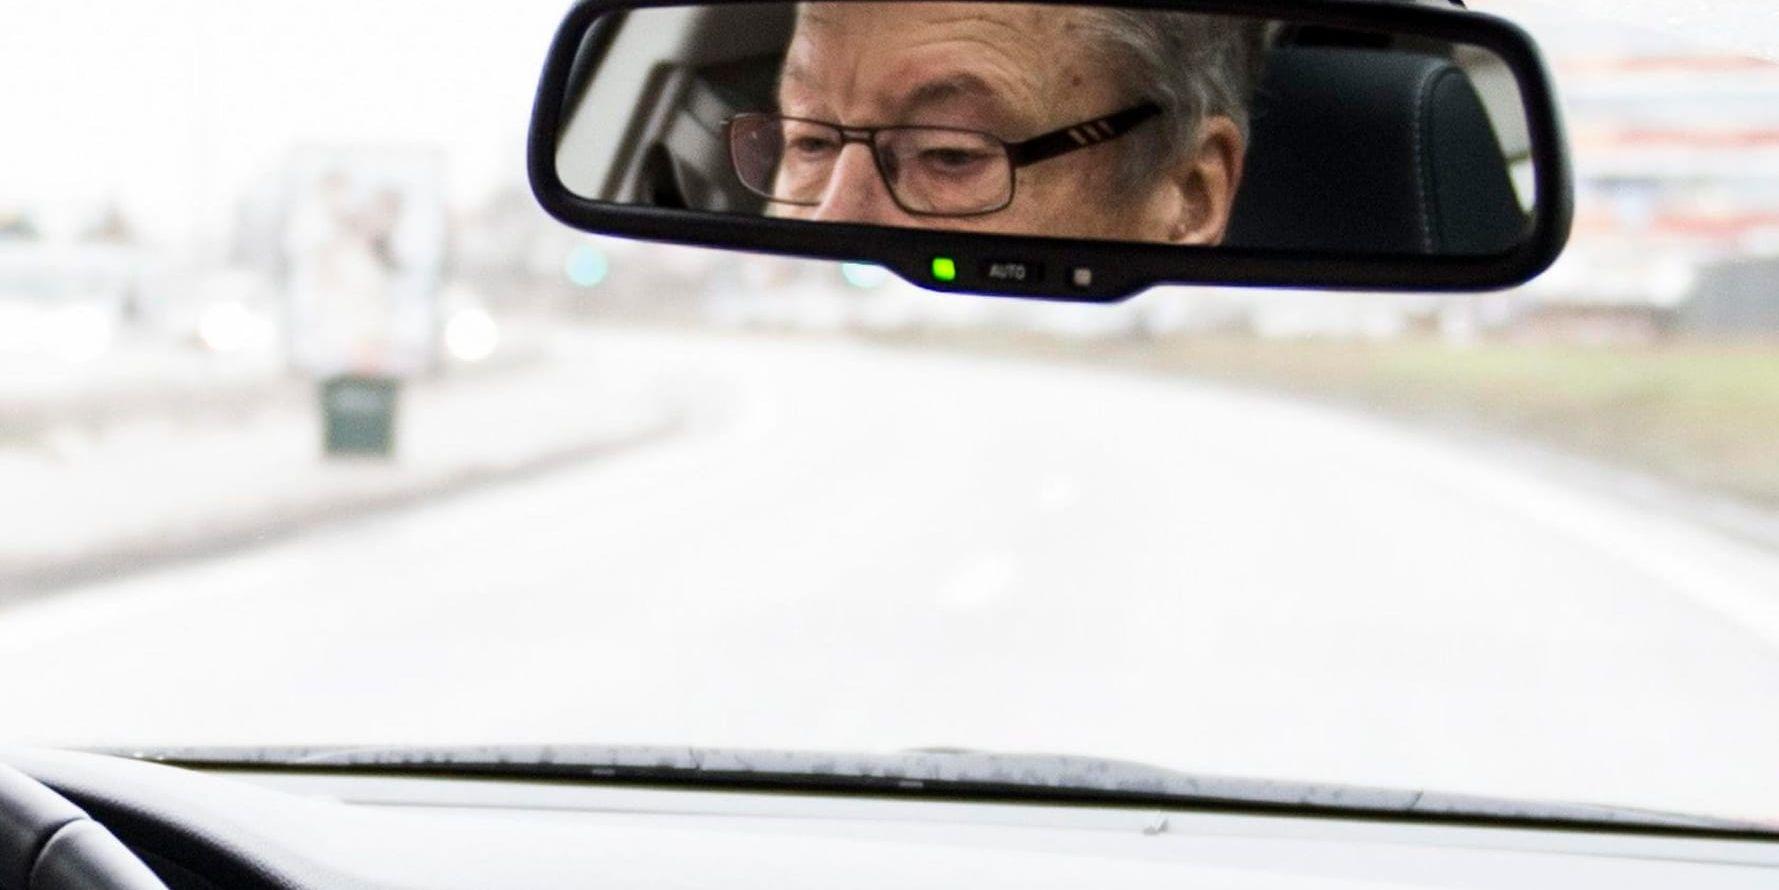 Bilförare bör kolla sin syn regelbundet, anser Bilprovningen och optiker. Arkivbild.